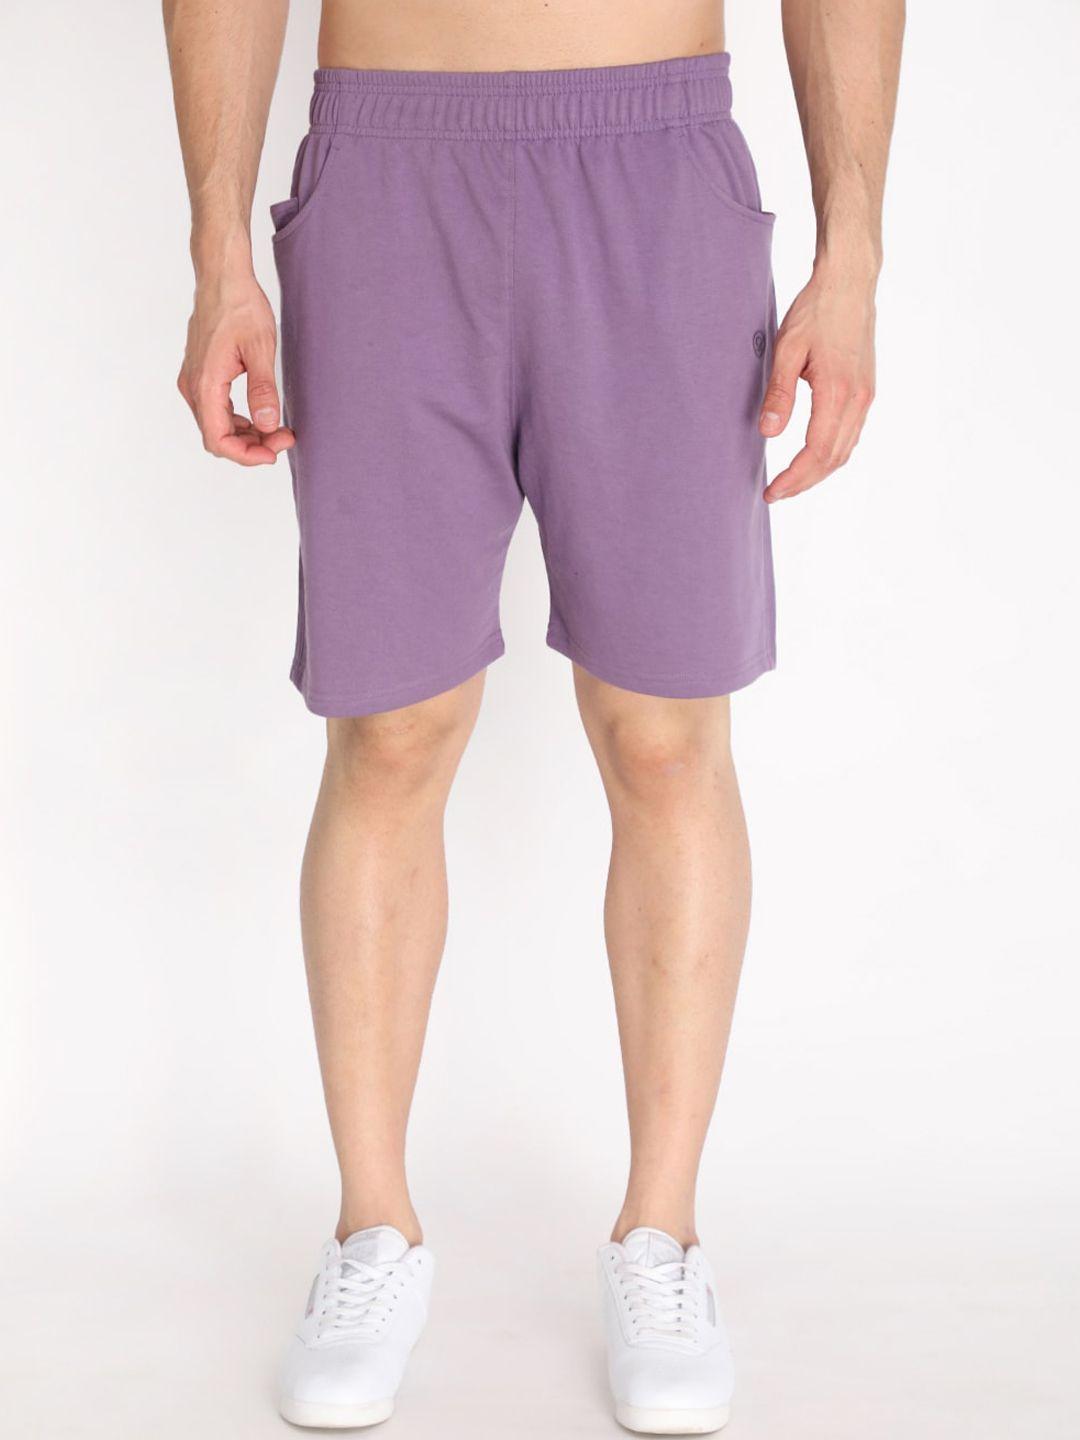 chkokko men purple outdoor sports shorts